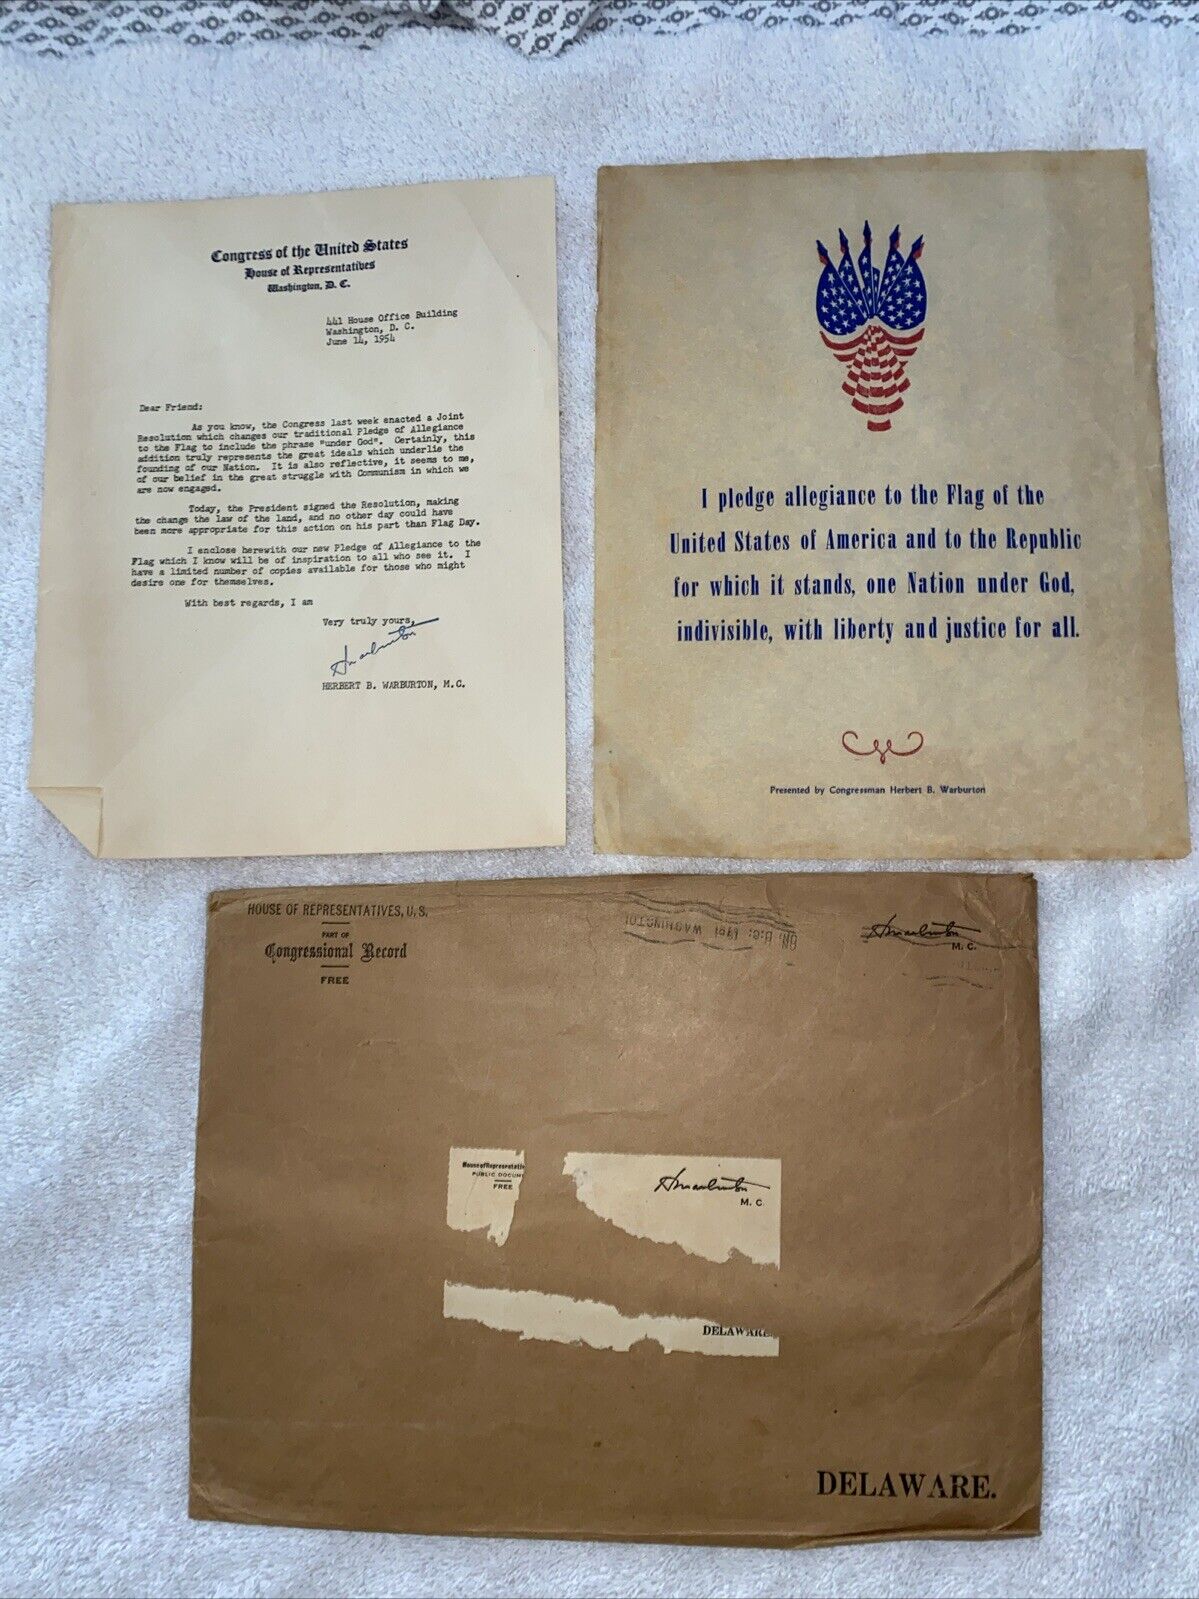 VTG  1954 Congress Letter Announced Adding “under God” To Pledge Of Allegiance